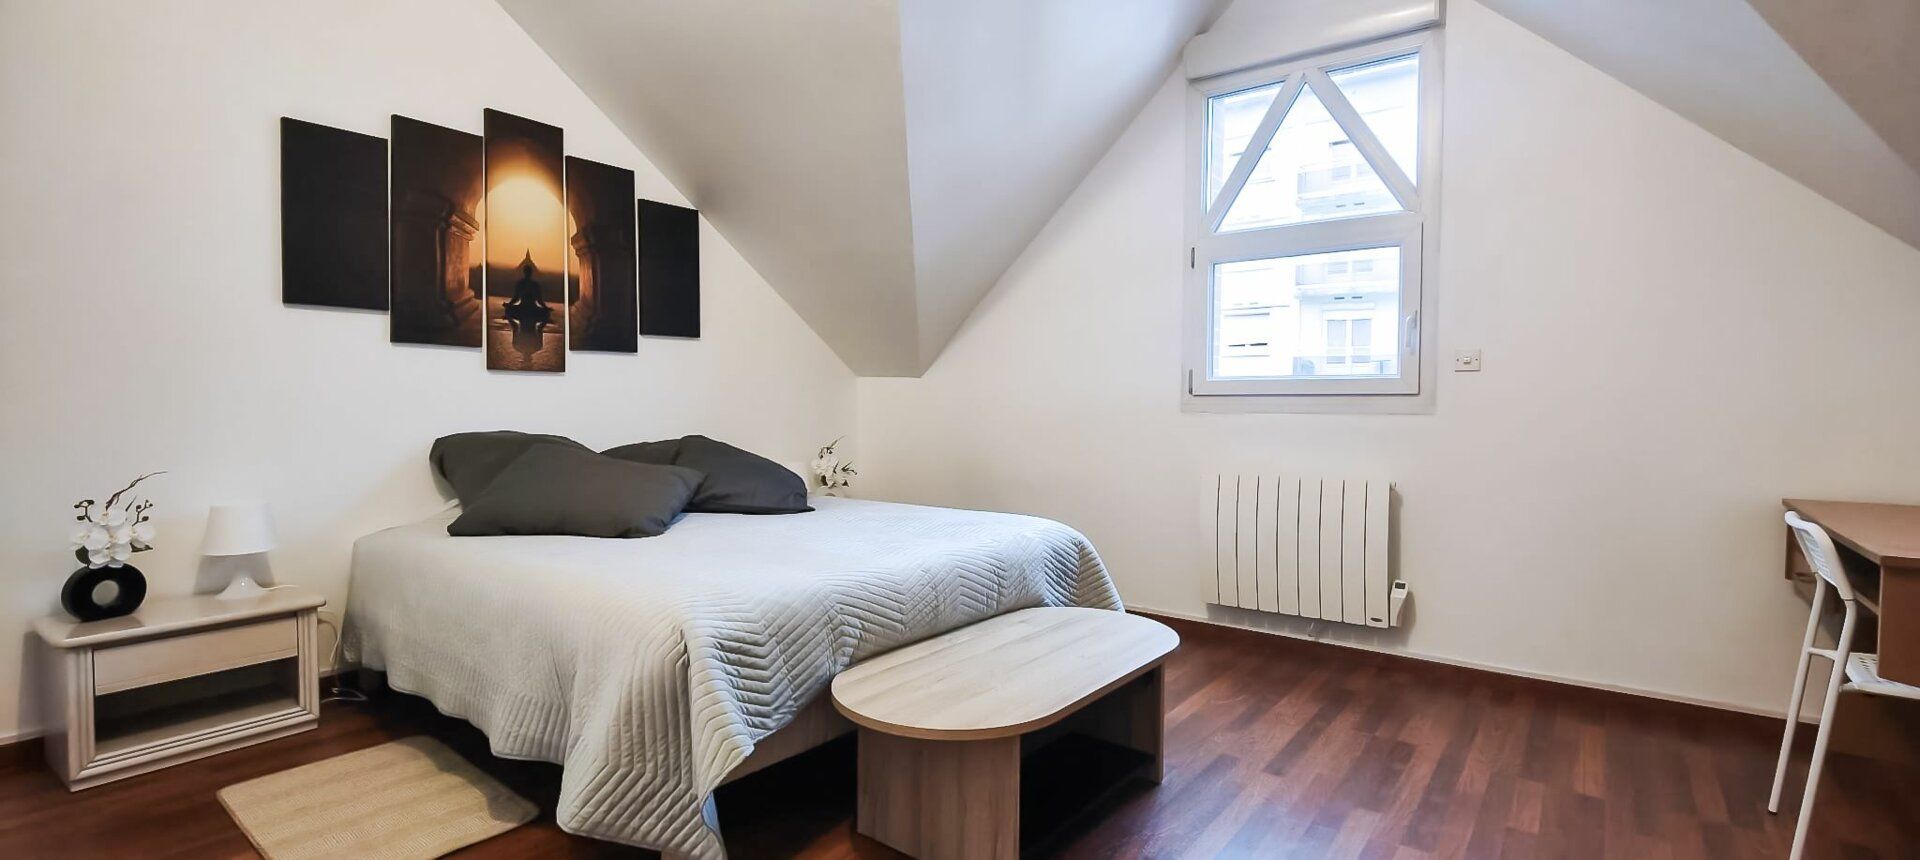 Appartement à vendre 4 111m2 à Rouen vignette-8